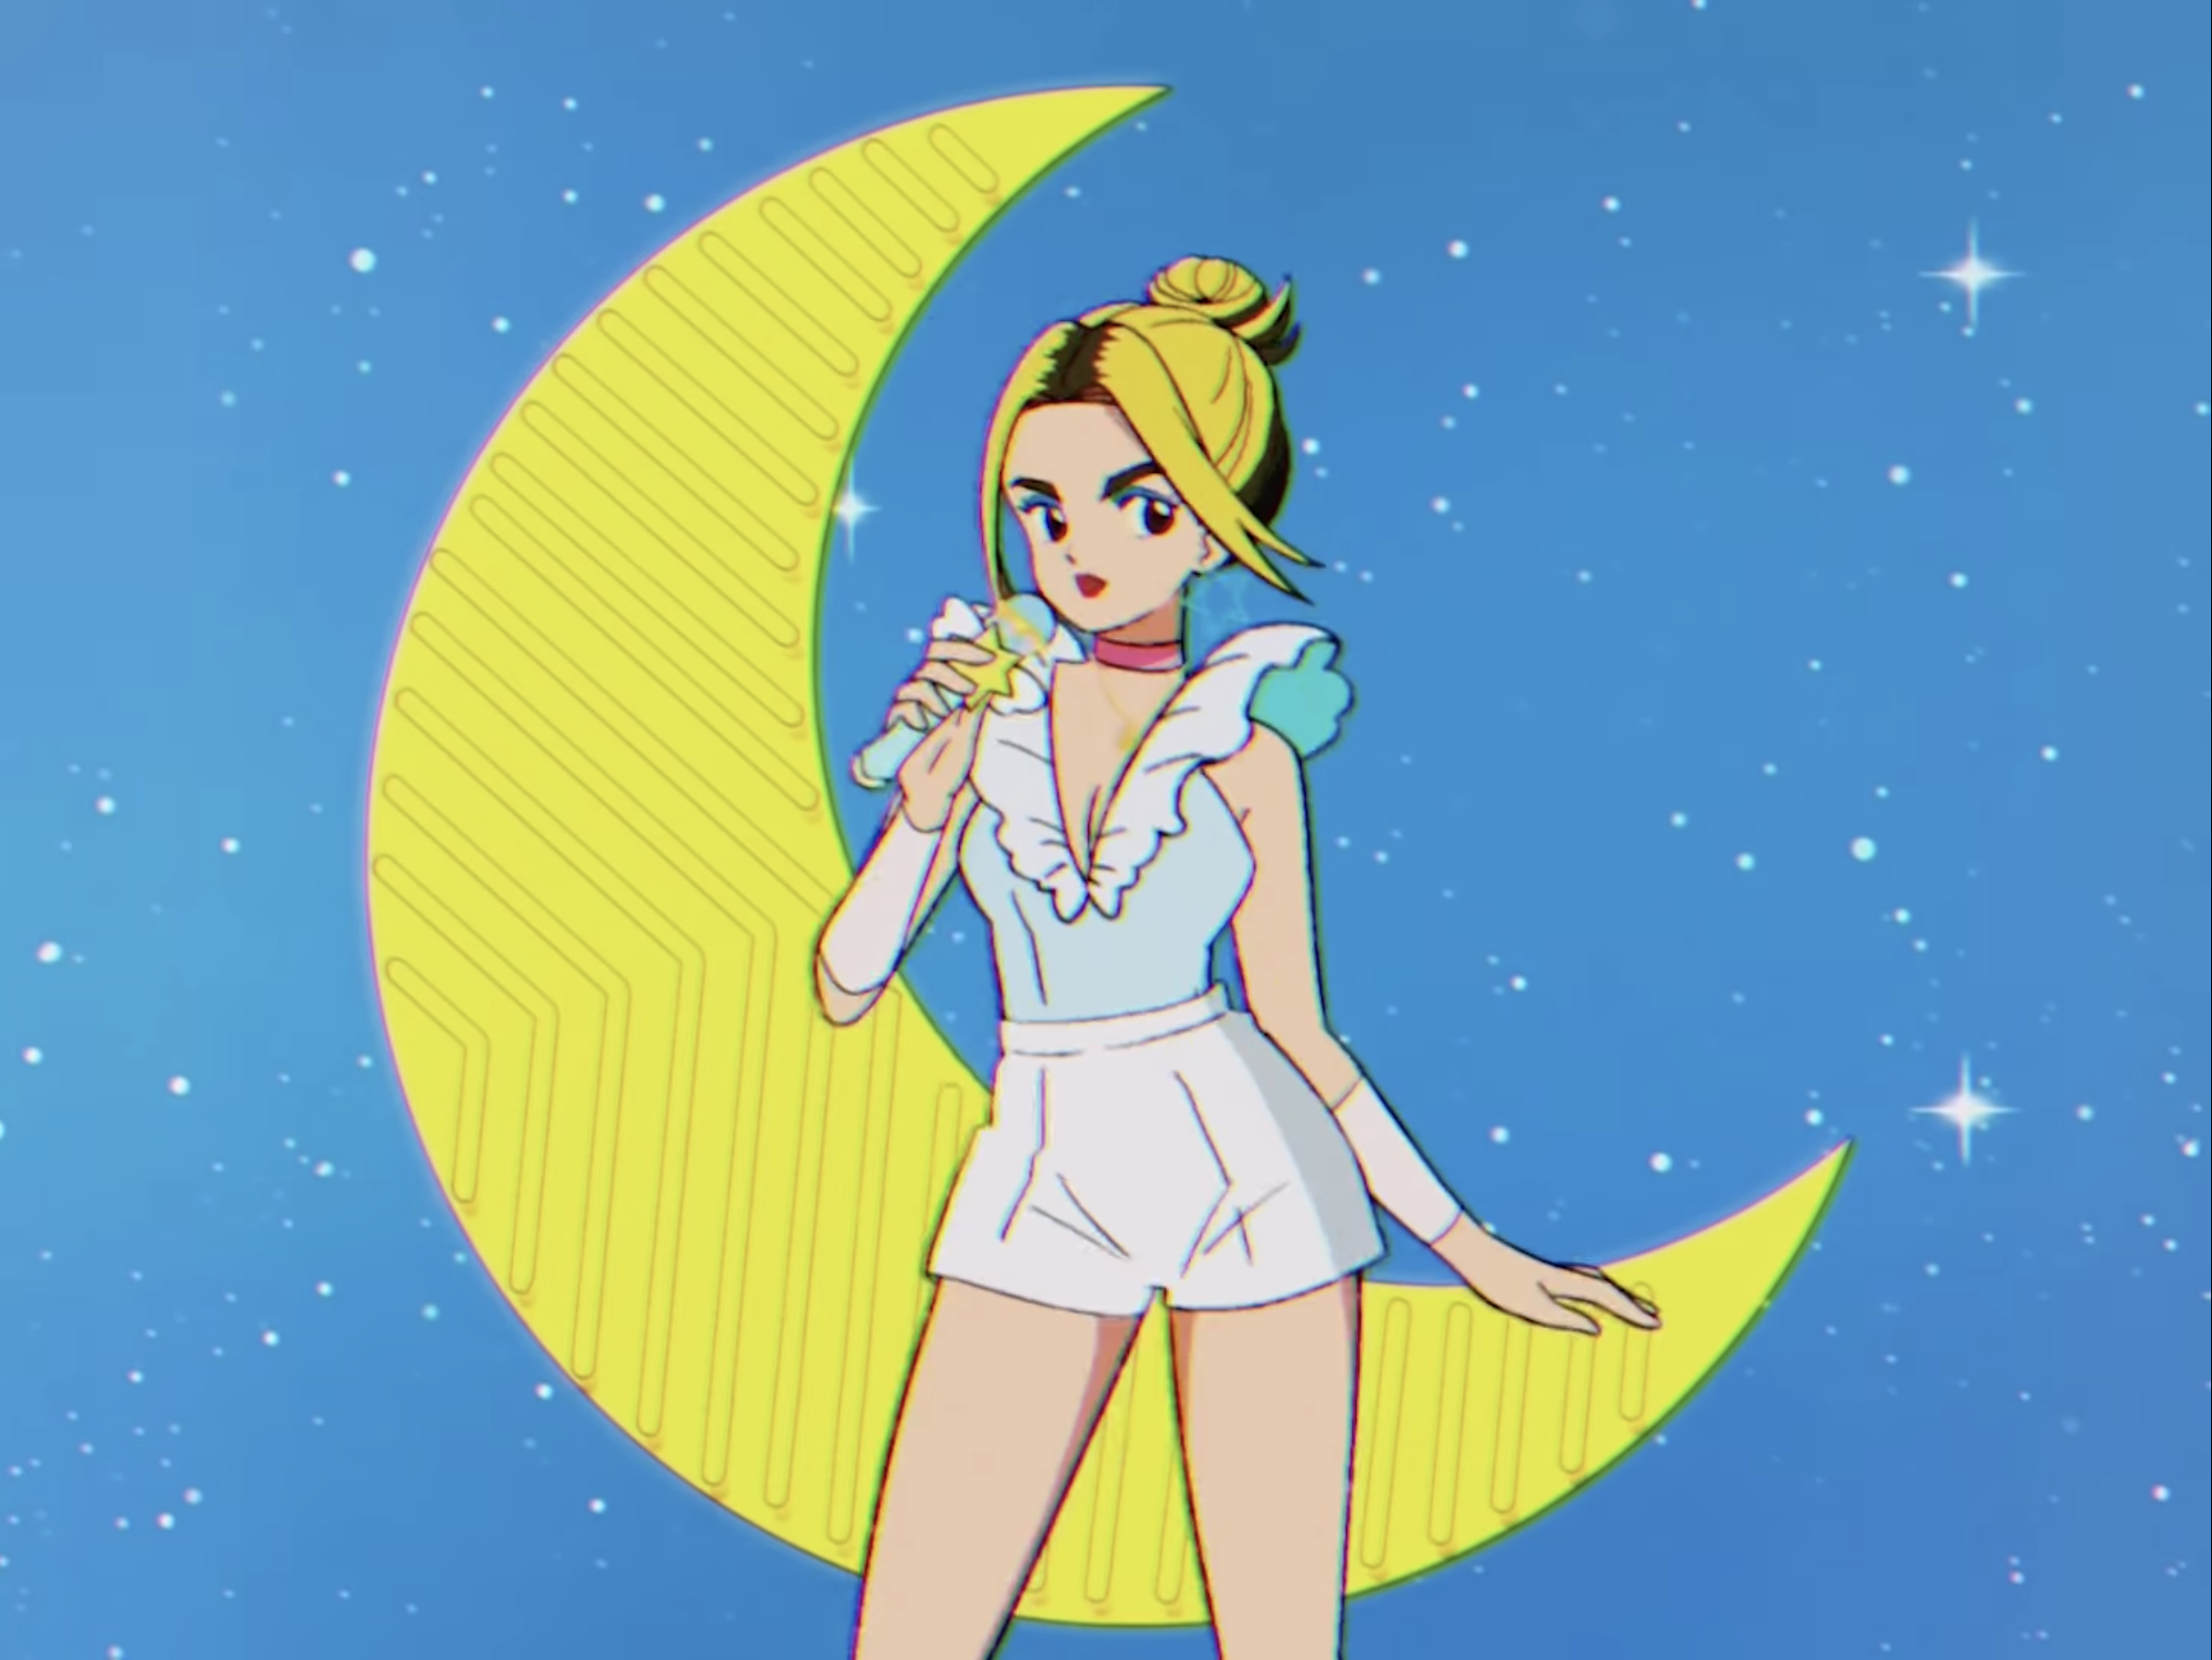 Crunchyroll - Singer Dua Lipa Goes Full Sailor Moon in Animated Music Video  for 'Levitating'